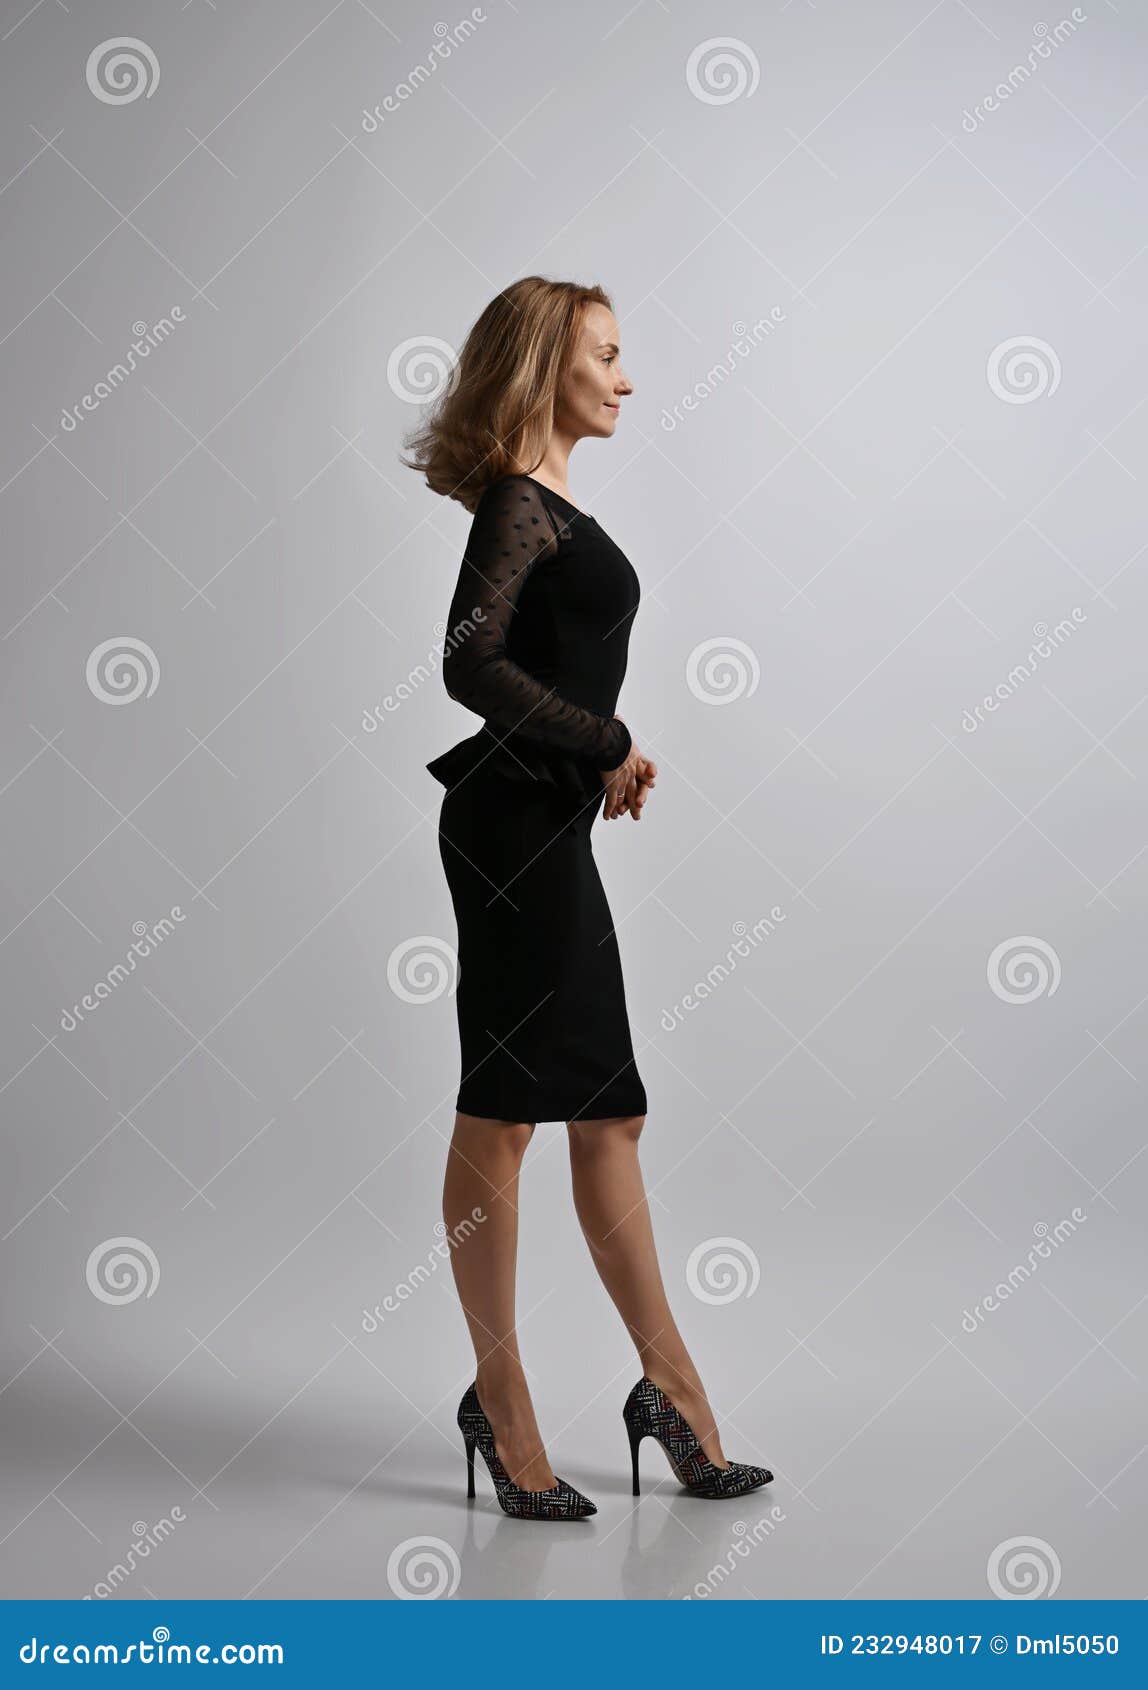 Mujer Rubia Delgada Trabajadora De Oficina Con Vestido Negro Formal Y Zapatos Tacón Alto Se Para De Lado a La Cámara Imagen de - Imagen de manera, semitransparente: 232948017